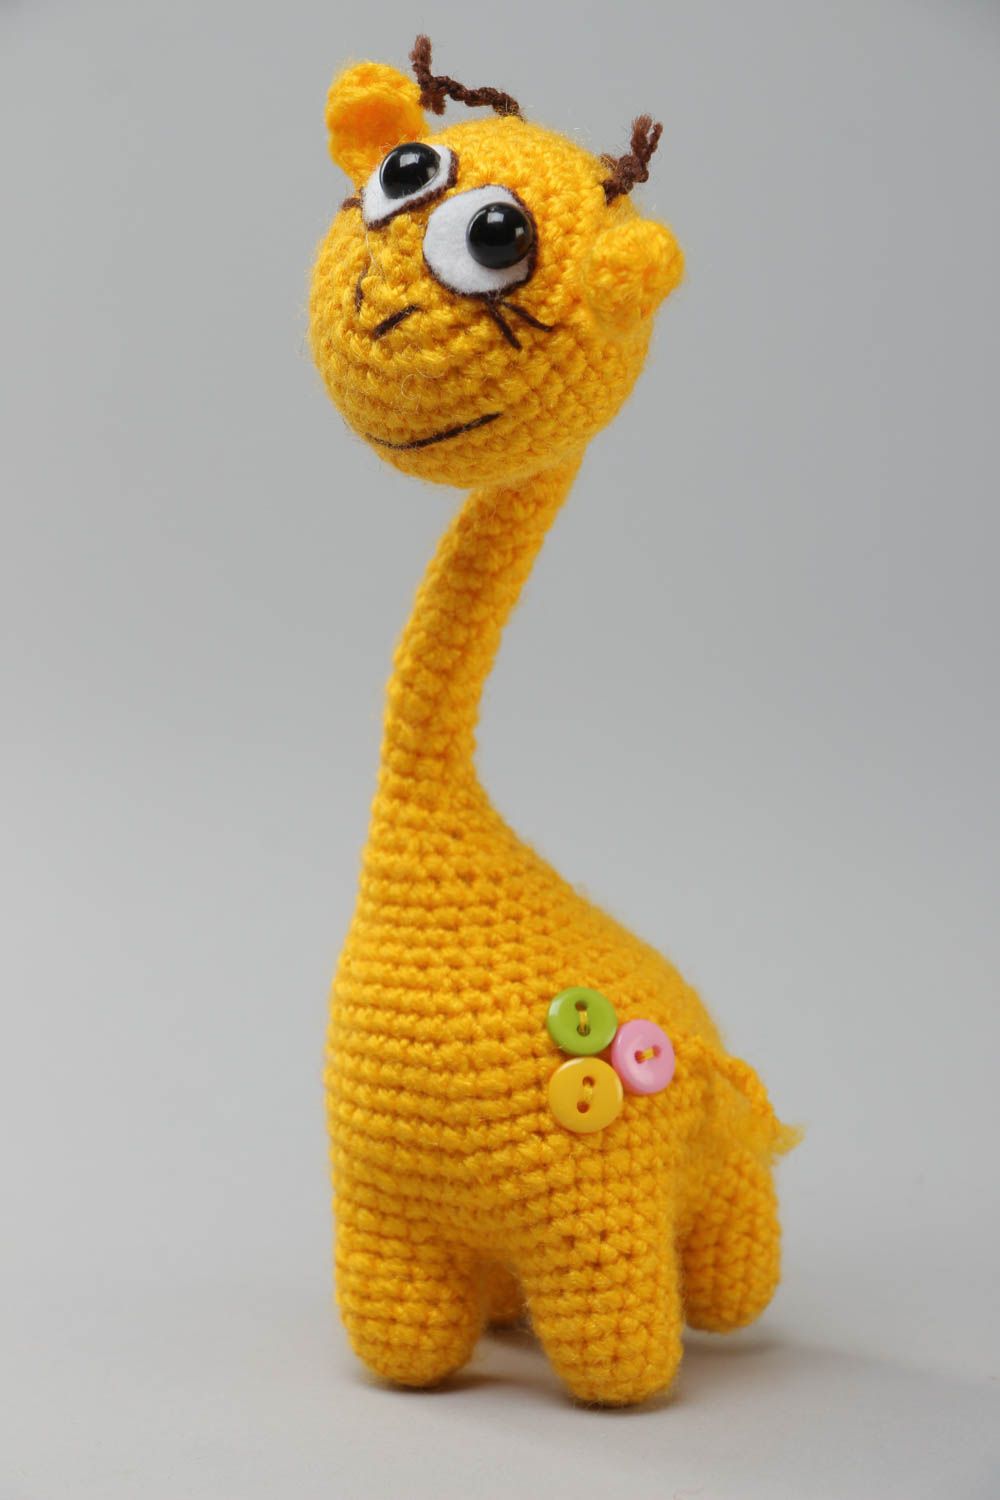 Мягкая вязаная игрушка авторская ручной работы жираф желтый на каркасе фото 2